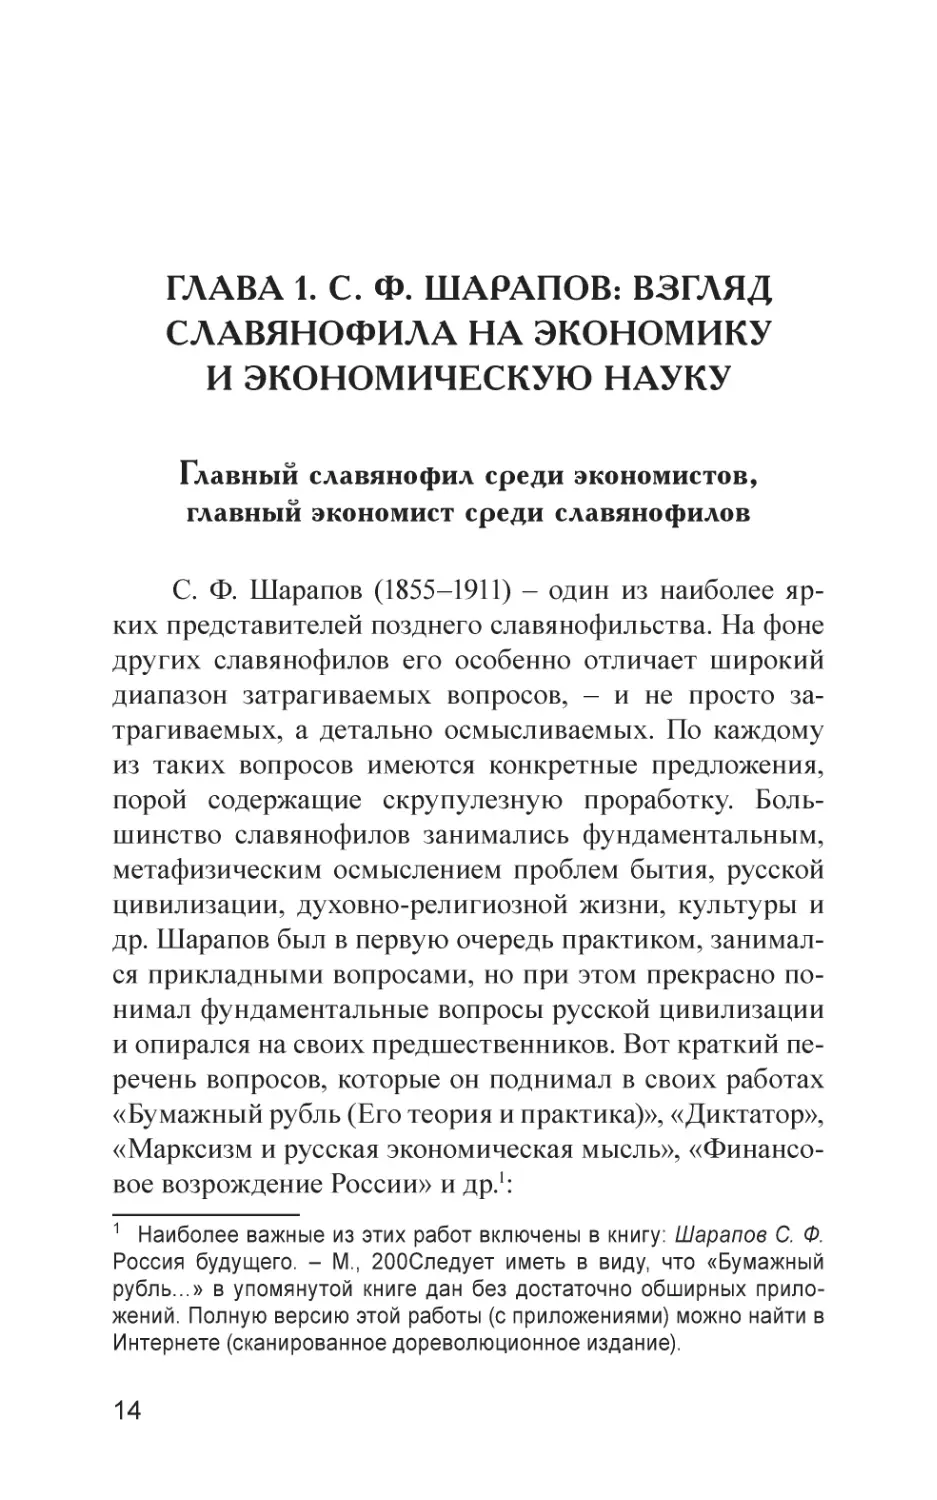 Глава 1. С. Ф. Шарапов
Главный славянофил среди экономистов, главный экономист среди славянофилов